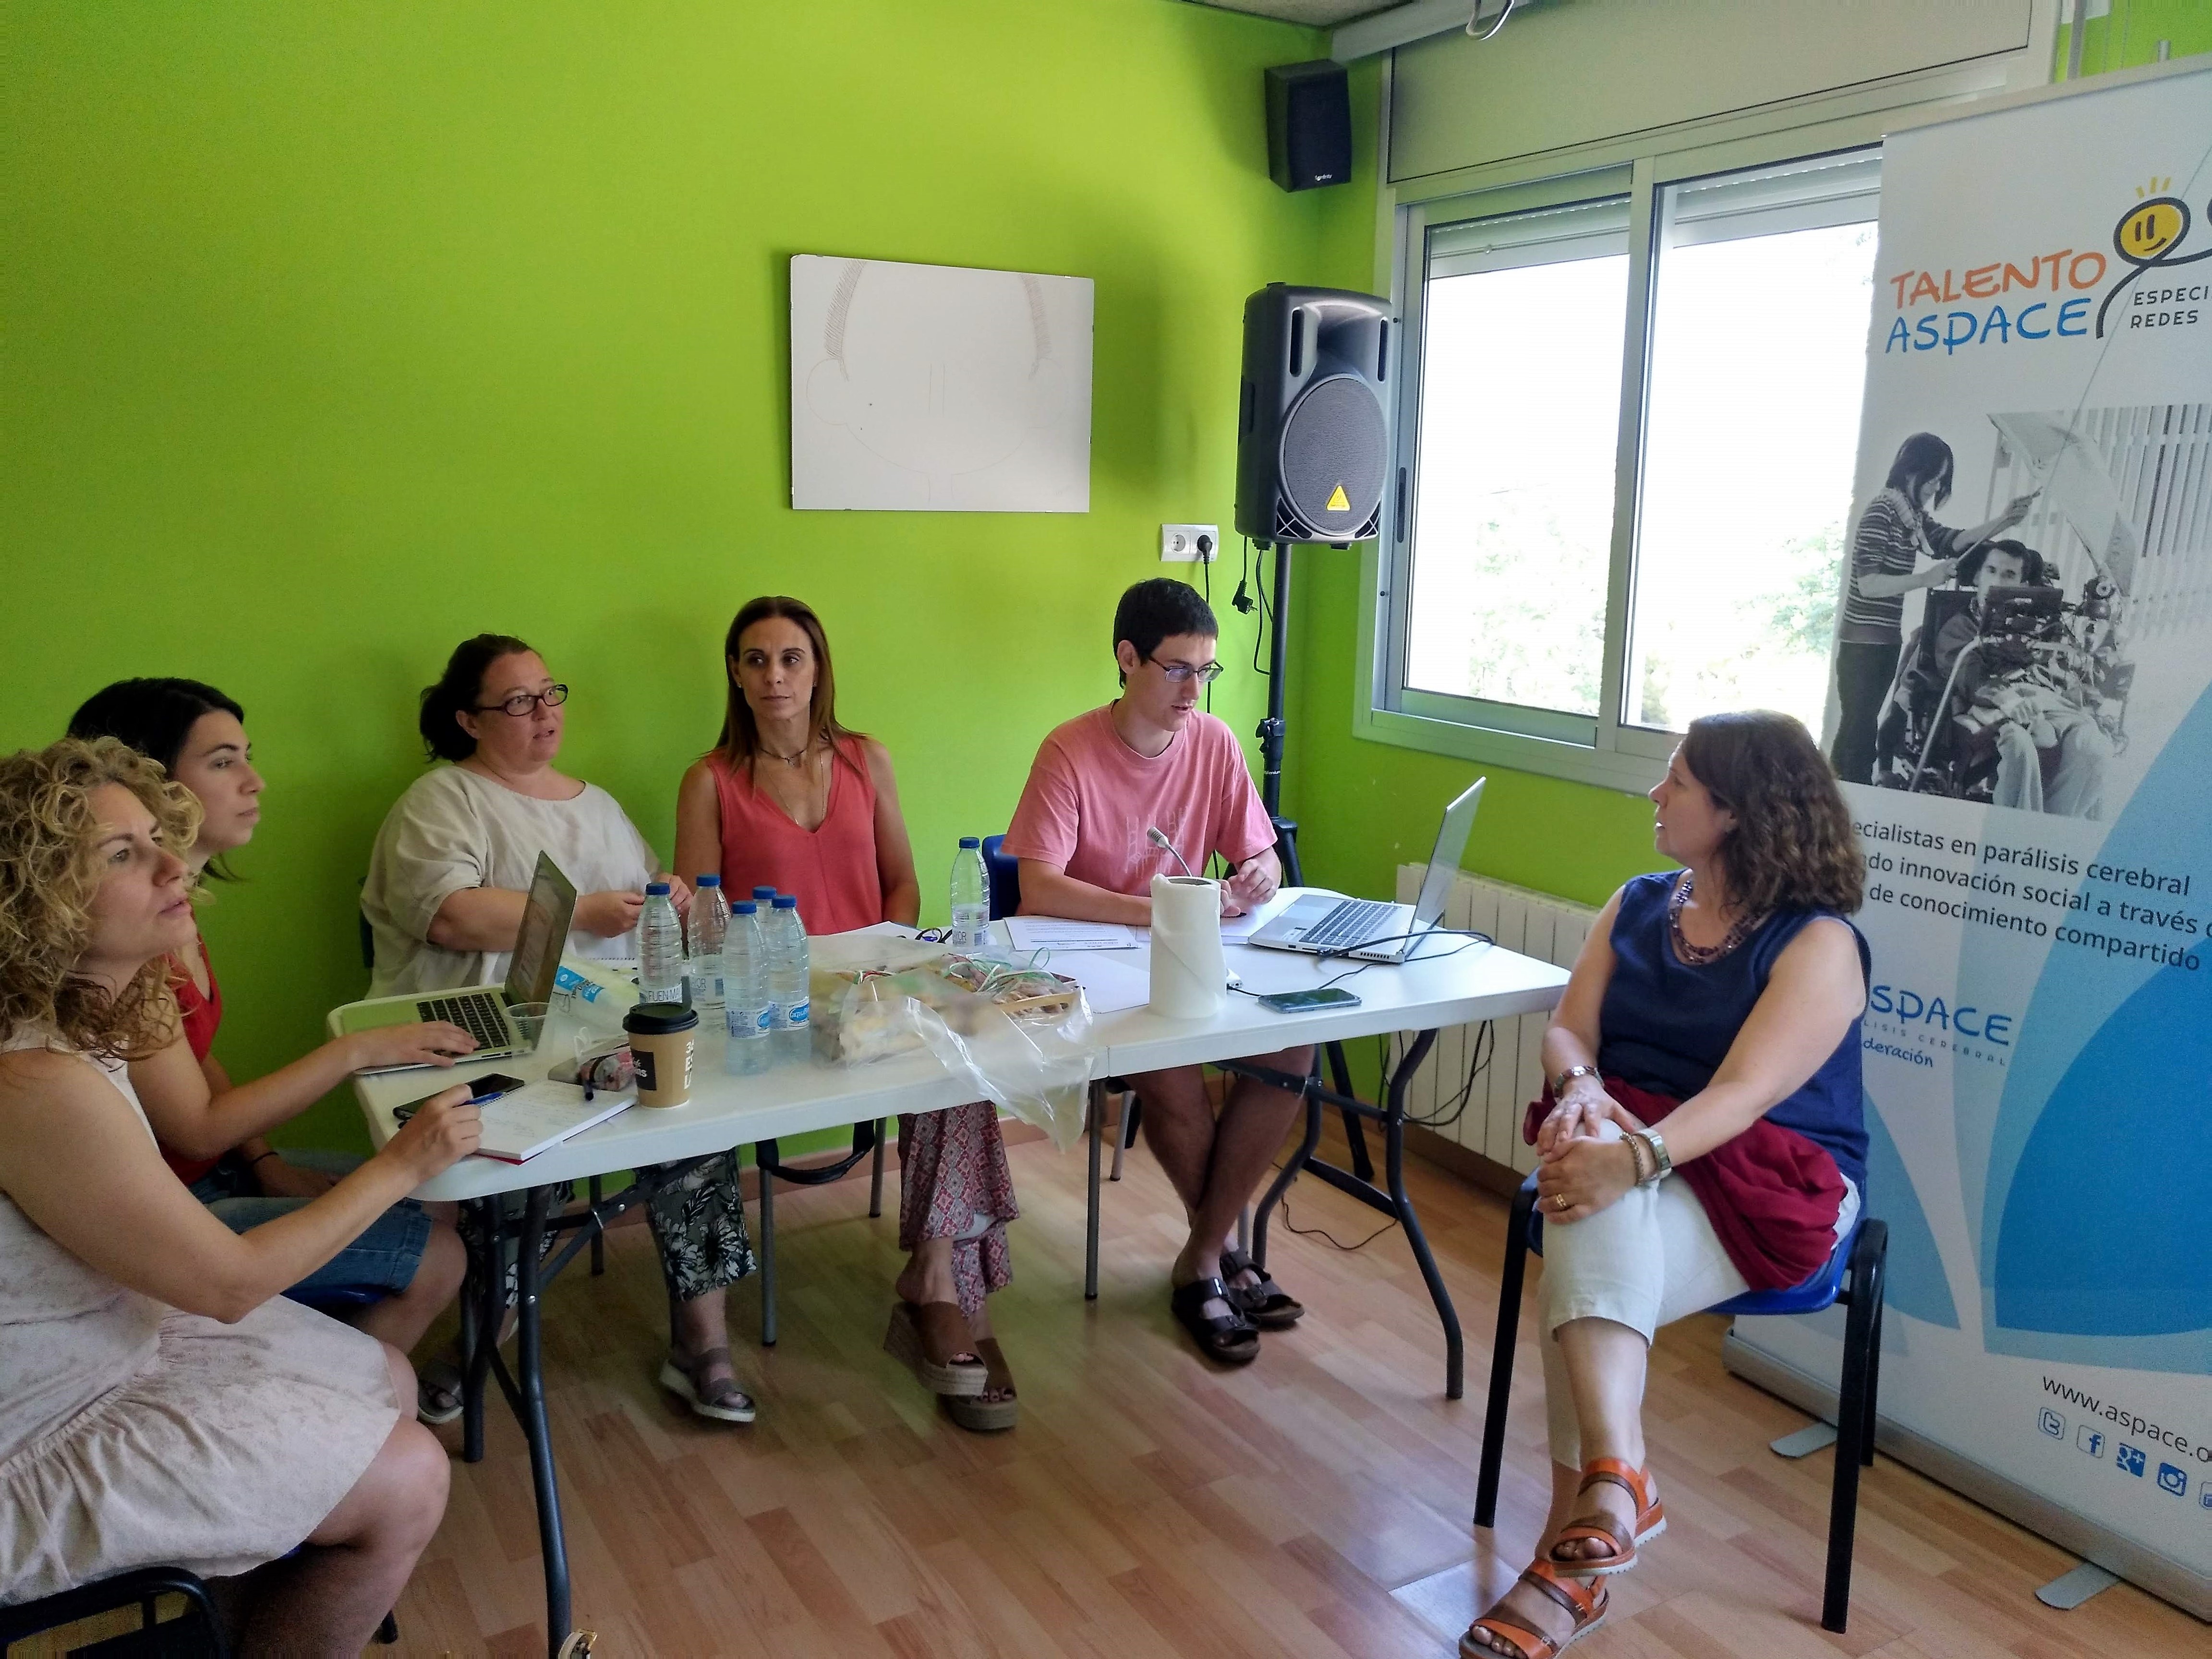 Rosa Reig, enfermera y Directora de la Residencia de APPC Tarragona, valora la participación en Talento ASPACE: 